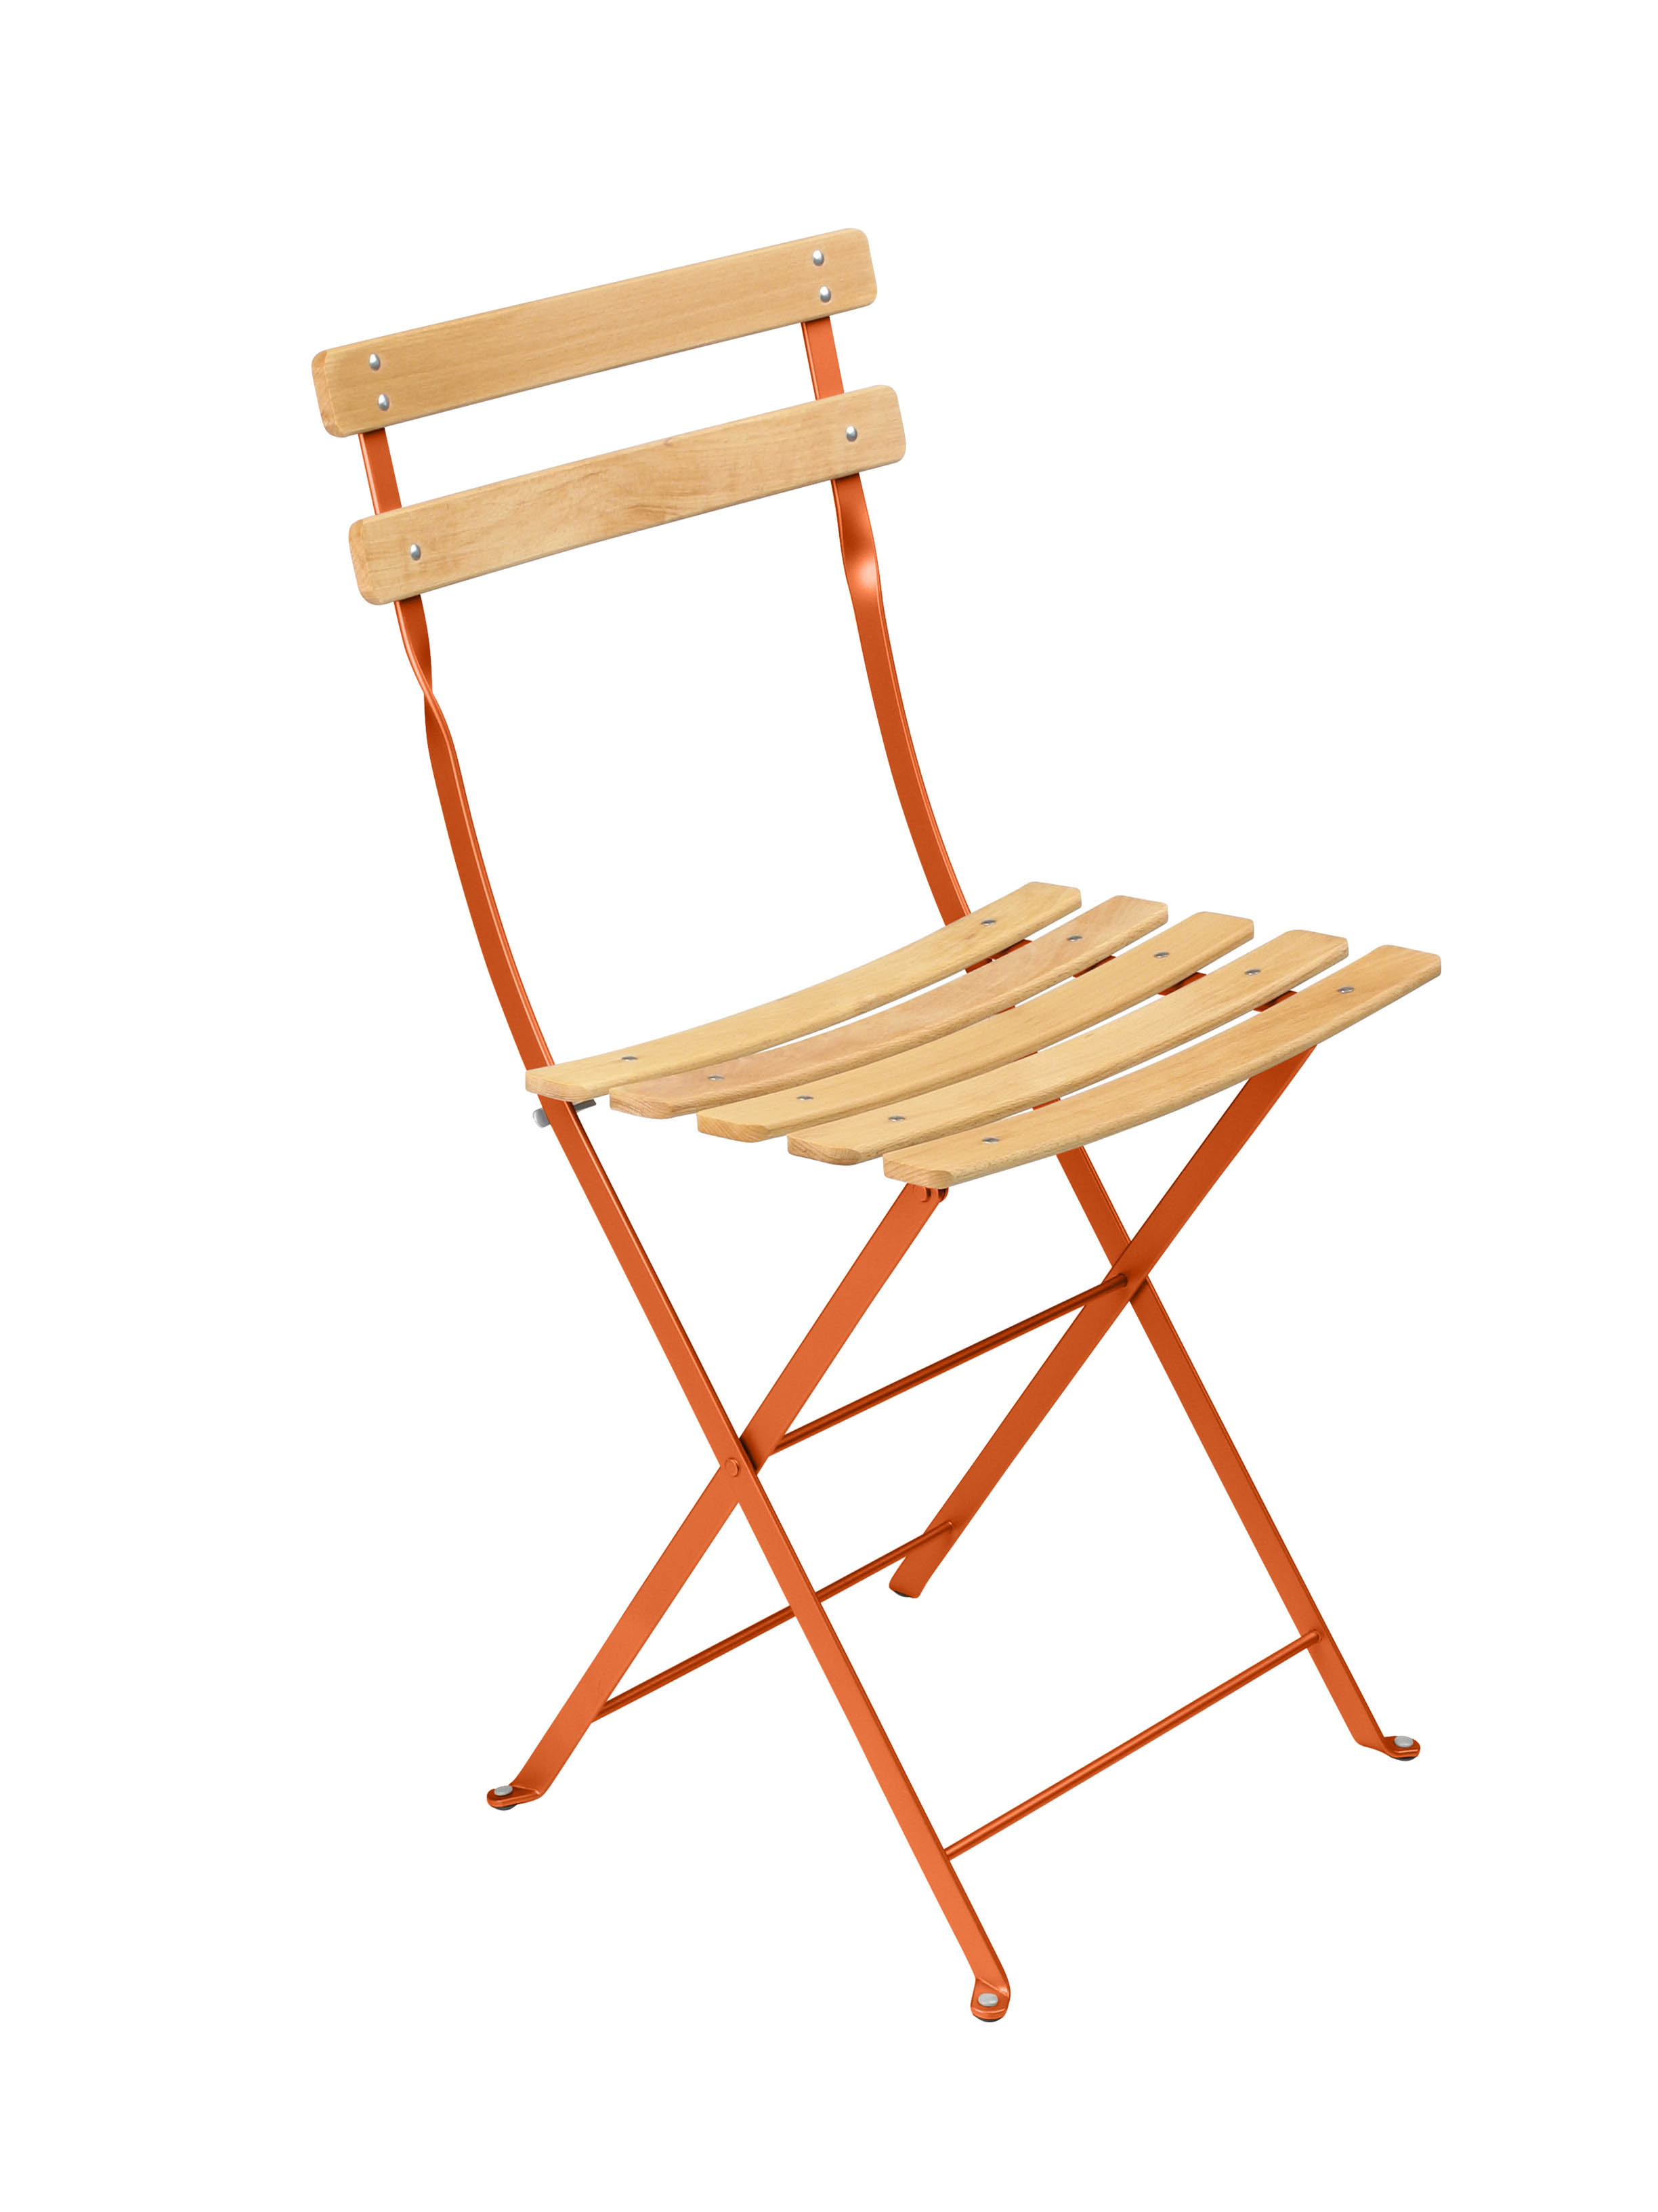 Fermob sedie: l’iconica Bistro si presenta ora anche in legno